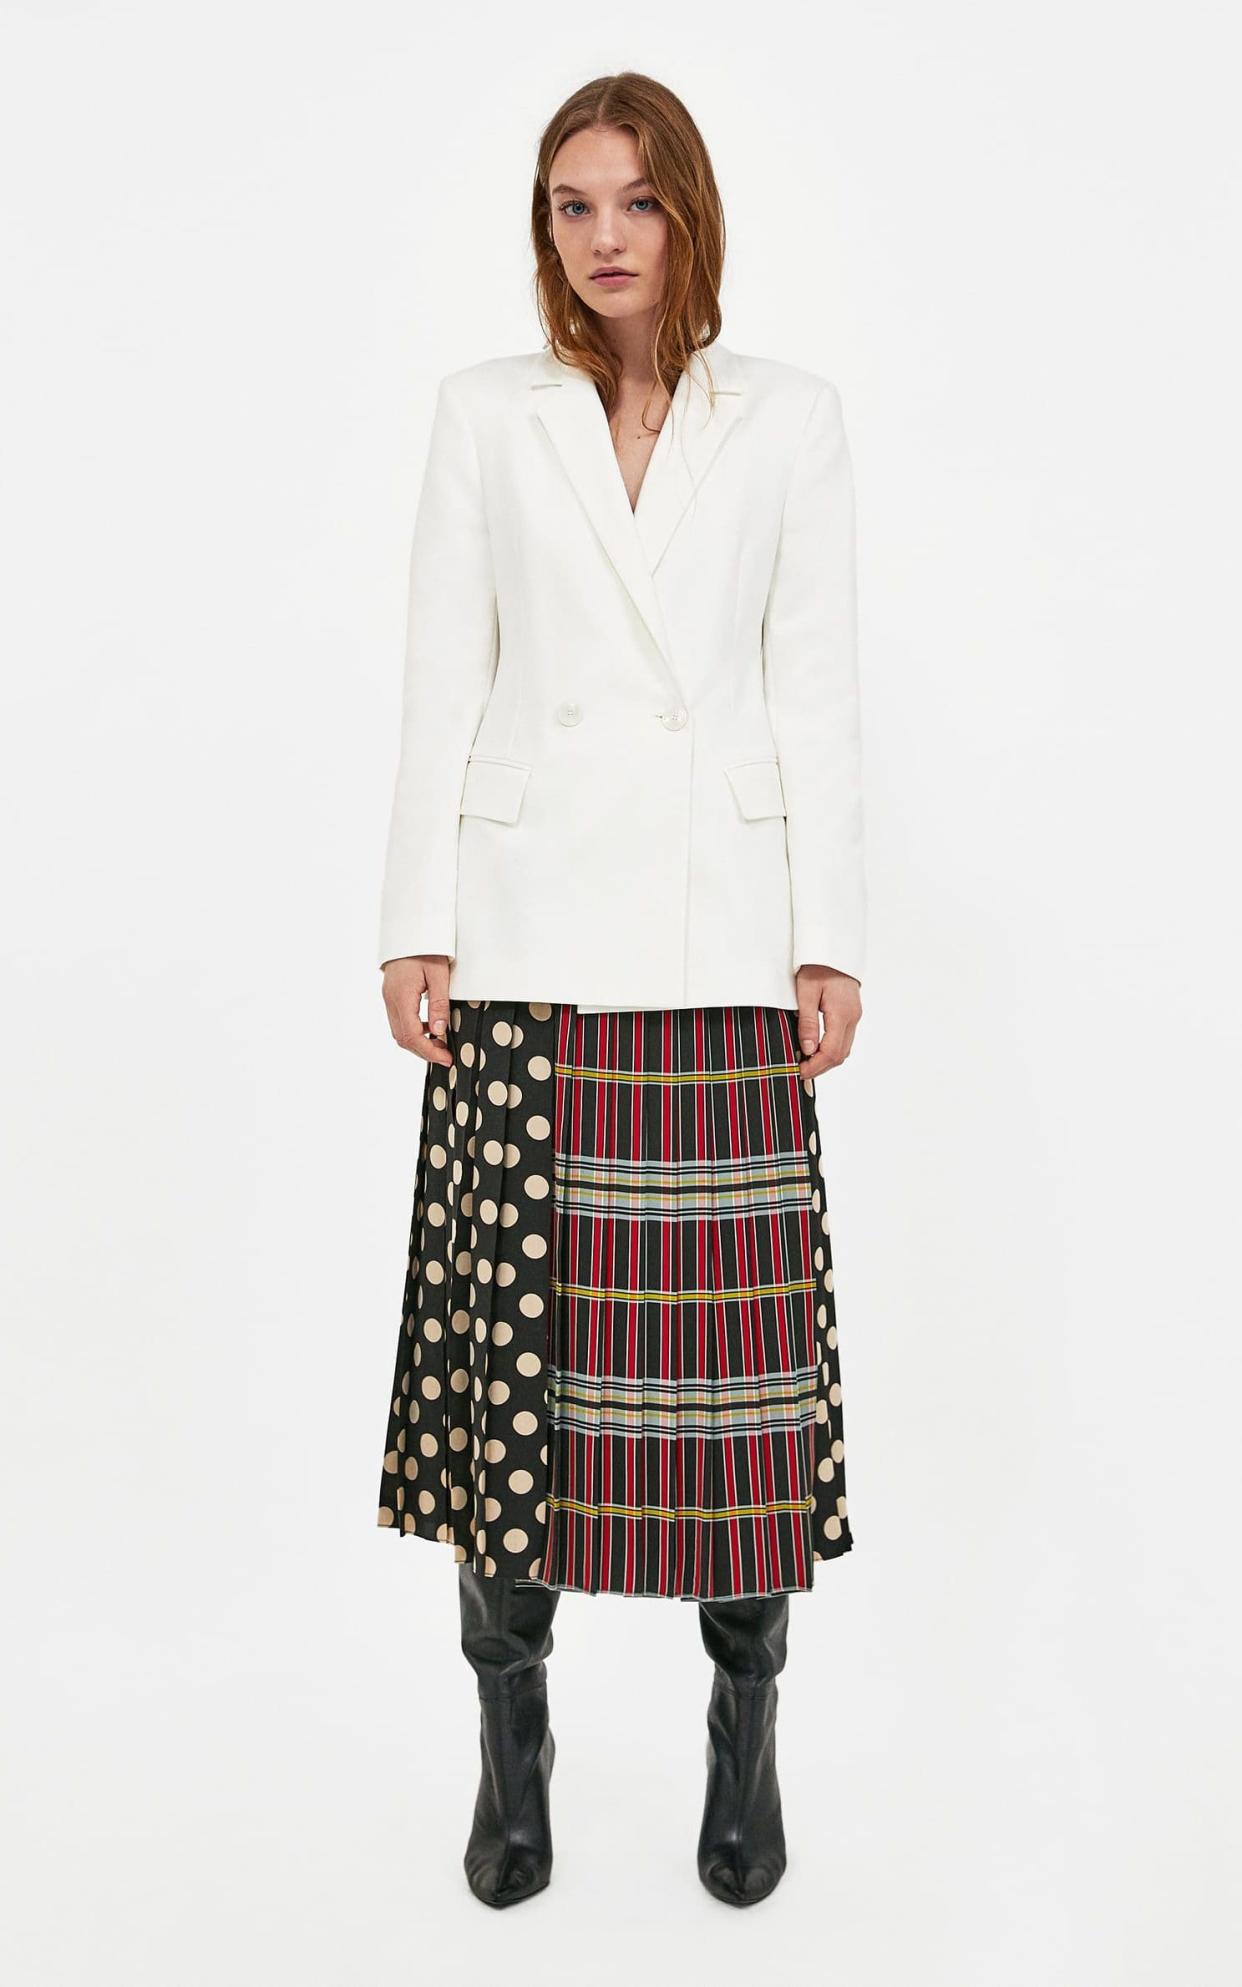 Blazer, £69.99; skirt, £69.99, both Zara